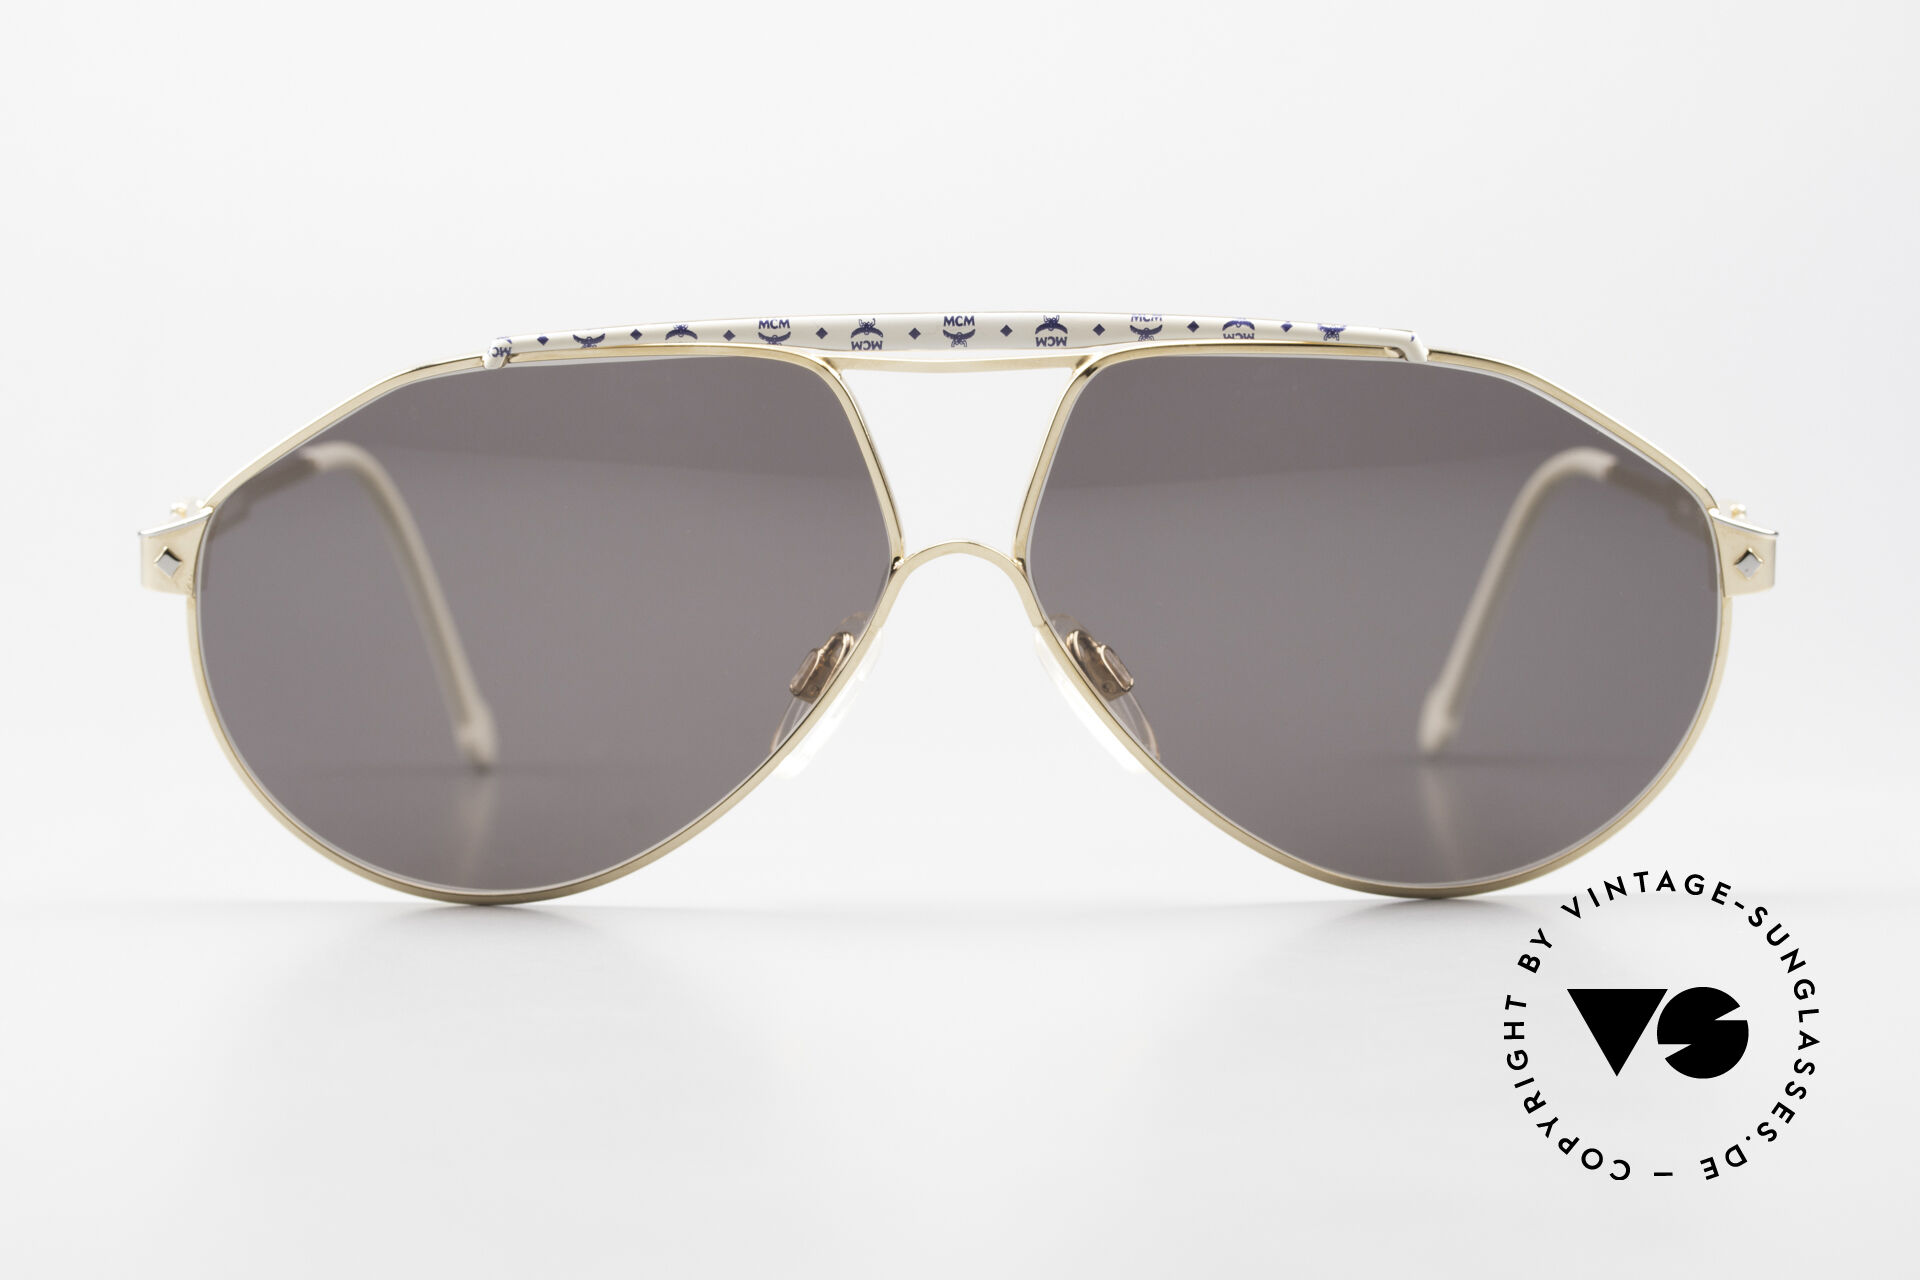 Gucci Sunglasses on Mercari | Sunglasses, Gucci sunglasses, Ombre fashion